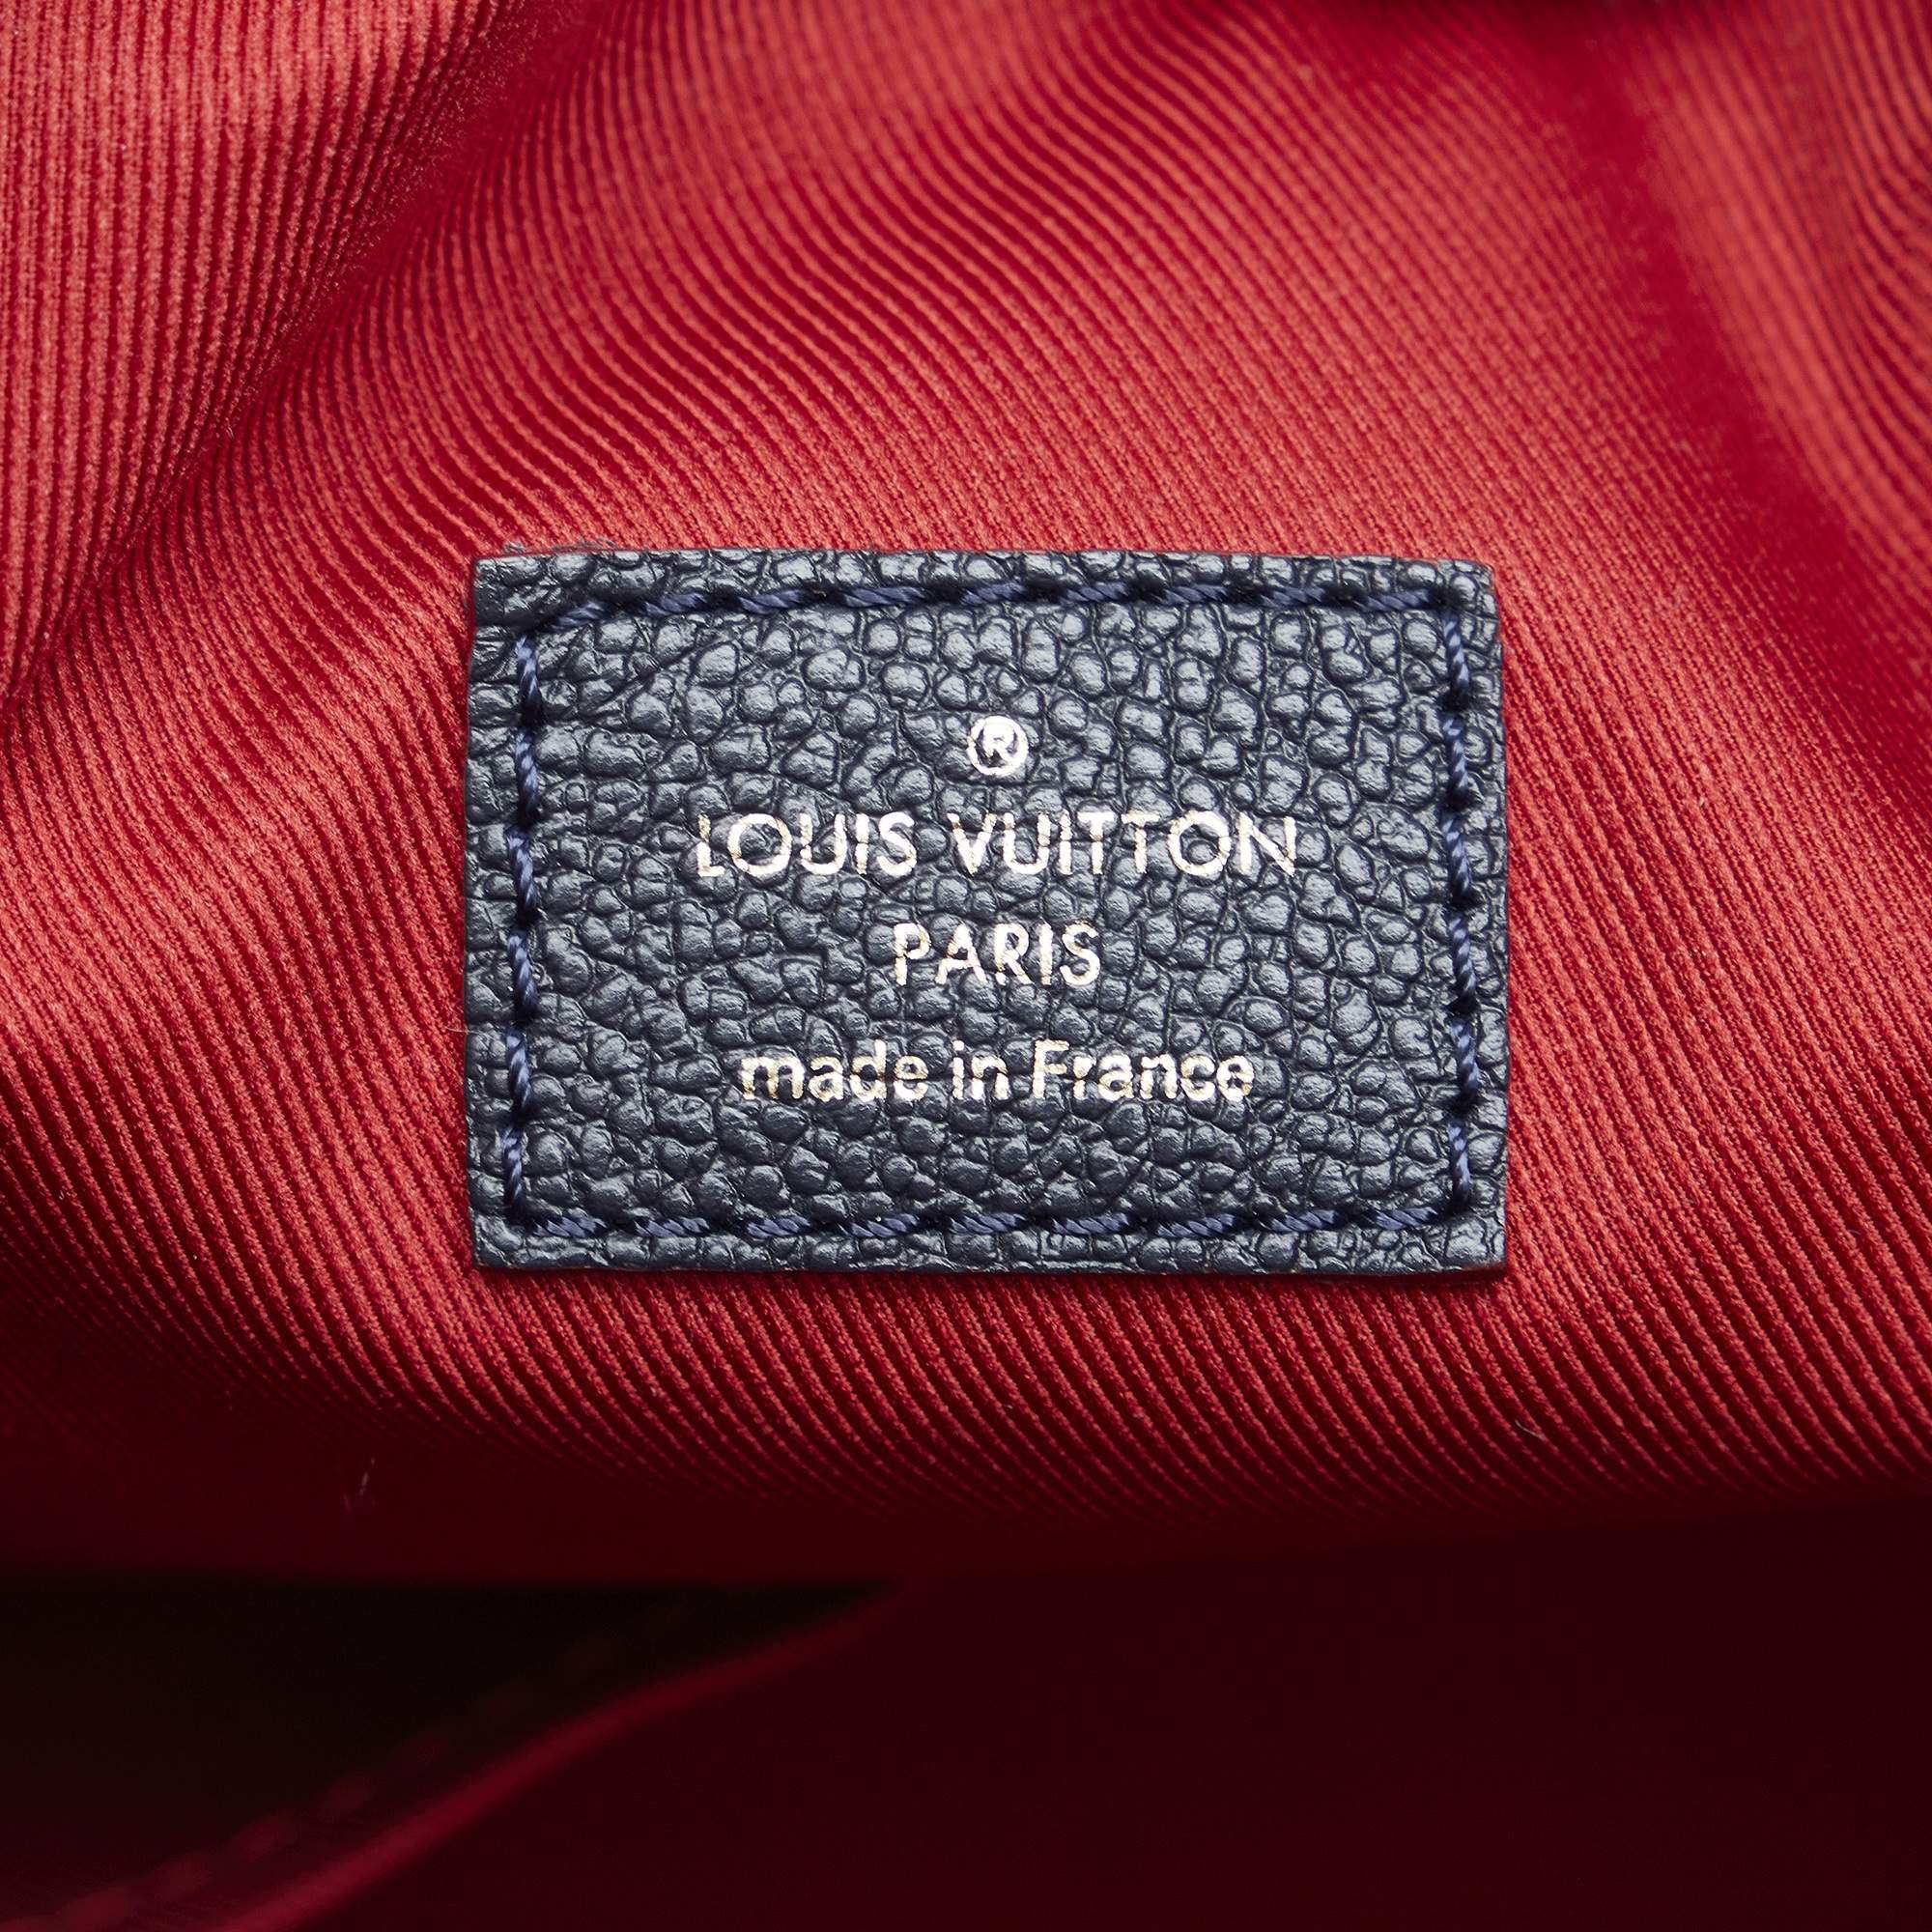 Louis Vuitton Monogram Empreinte Ponthieu PM - Blue Shoulder Bags, Handbags  - LOU733248